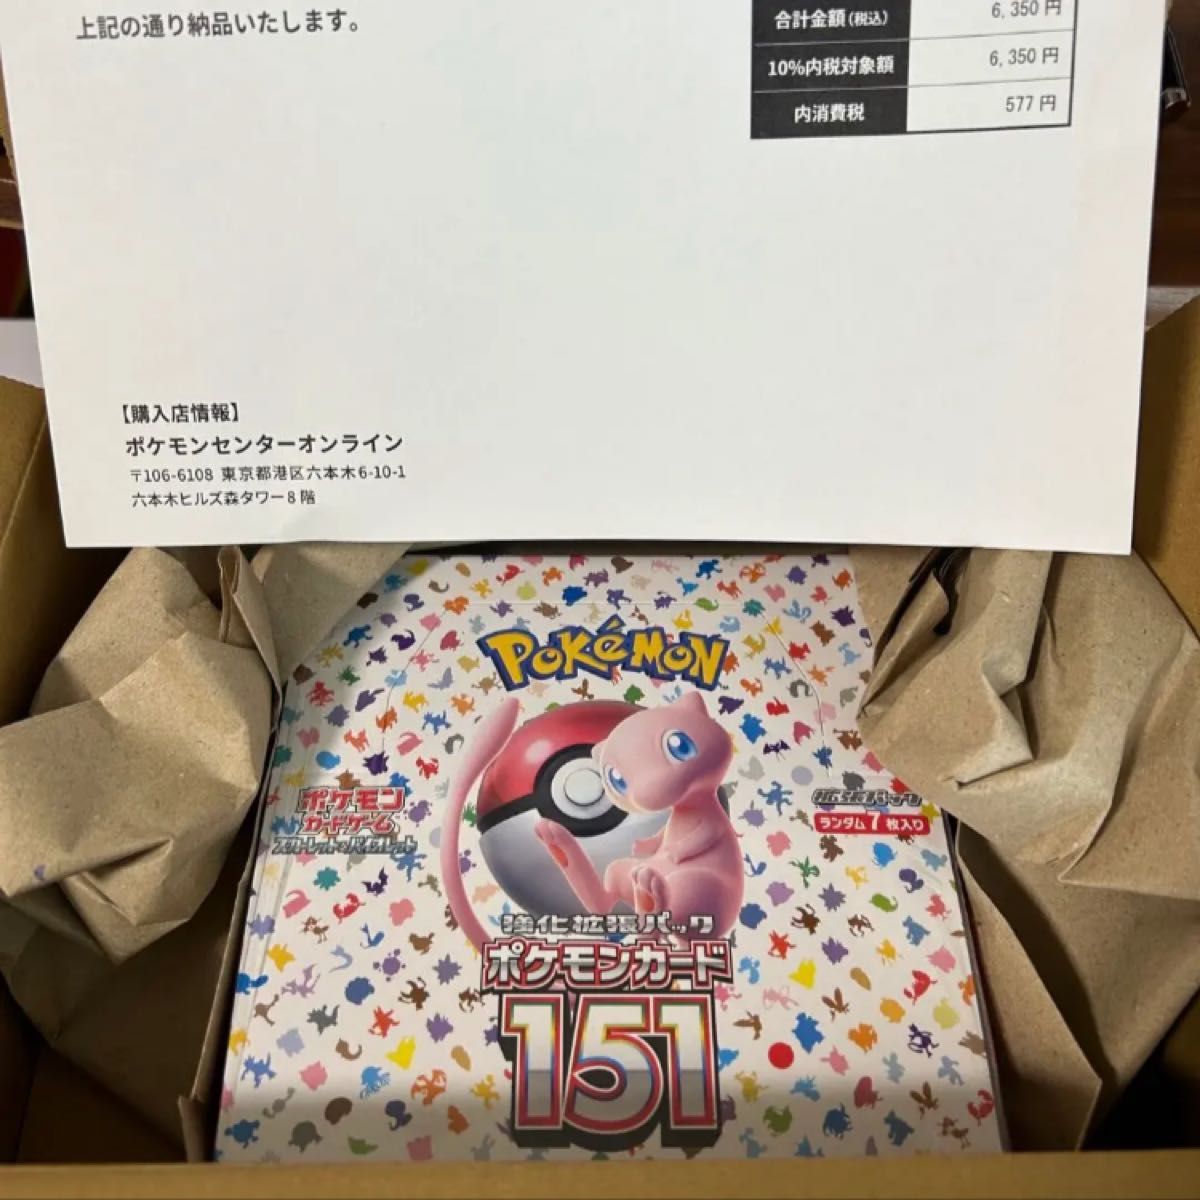 ポケモンカード 151 box 新品未開封 シュリンク付き ポケセン産-